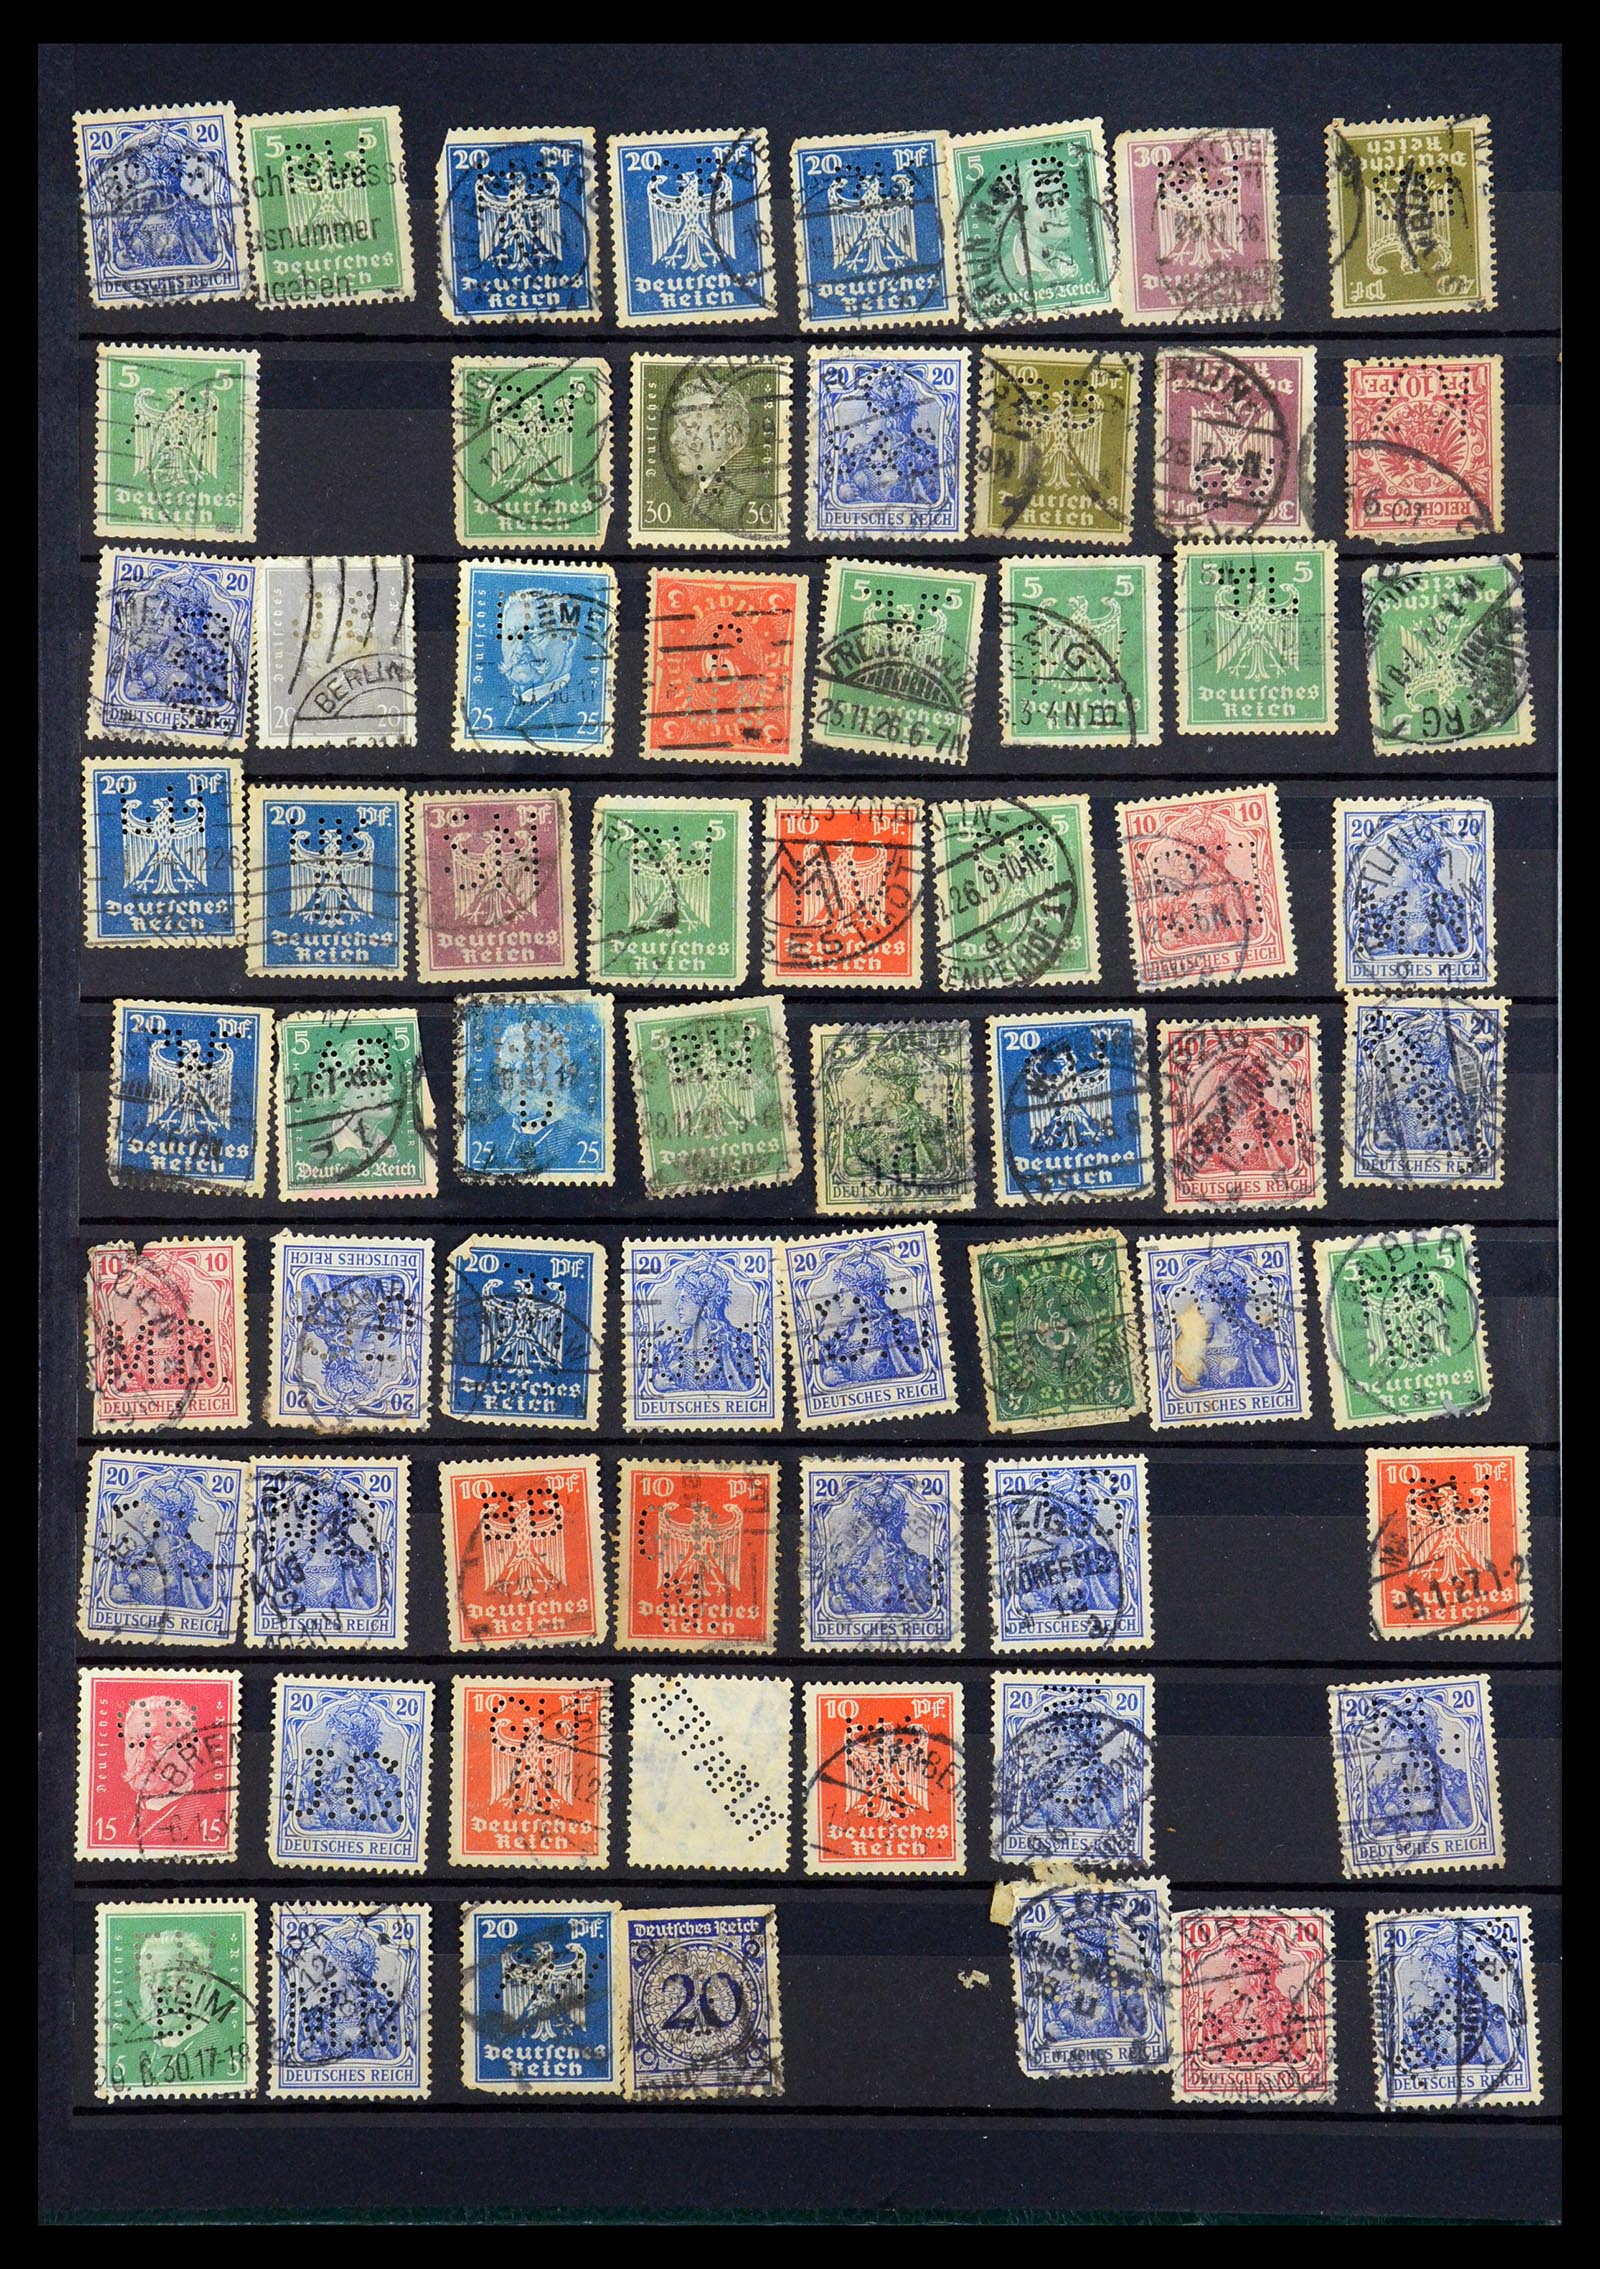 35183 008 - Stamp Collection 35183 German Reich perfins 1880-1945.